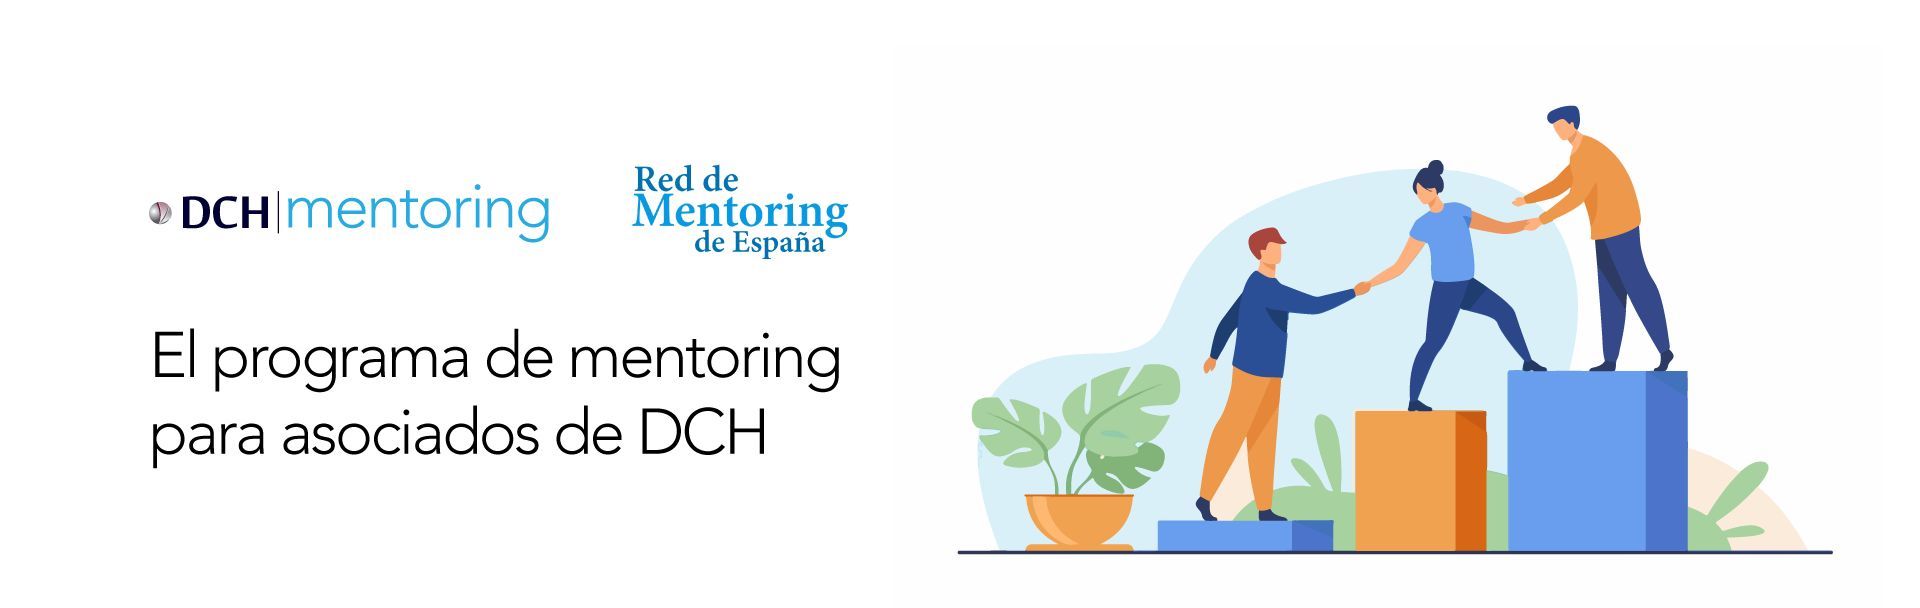 dch mentoring 1 1